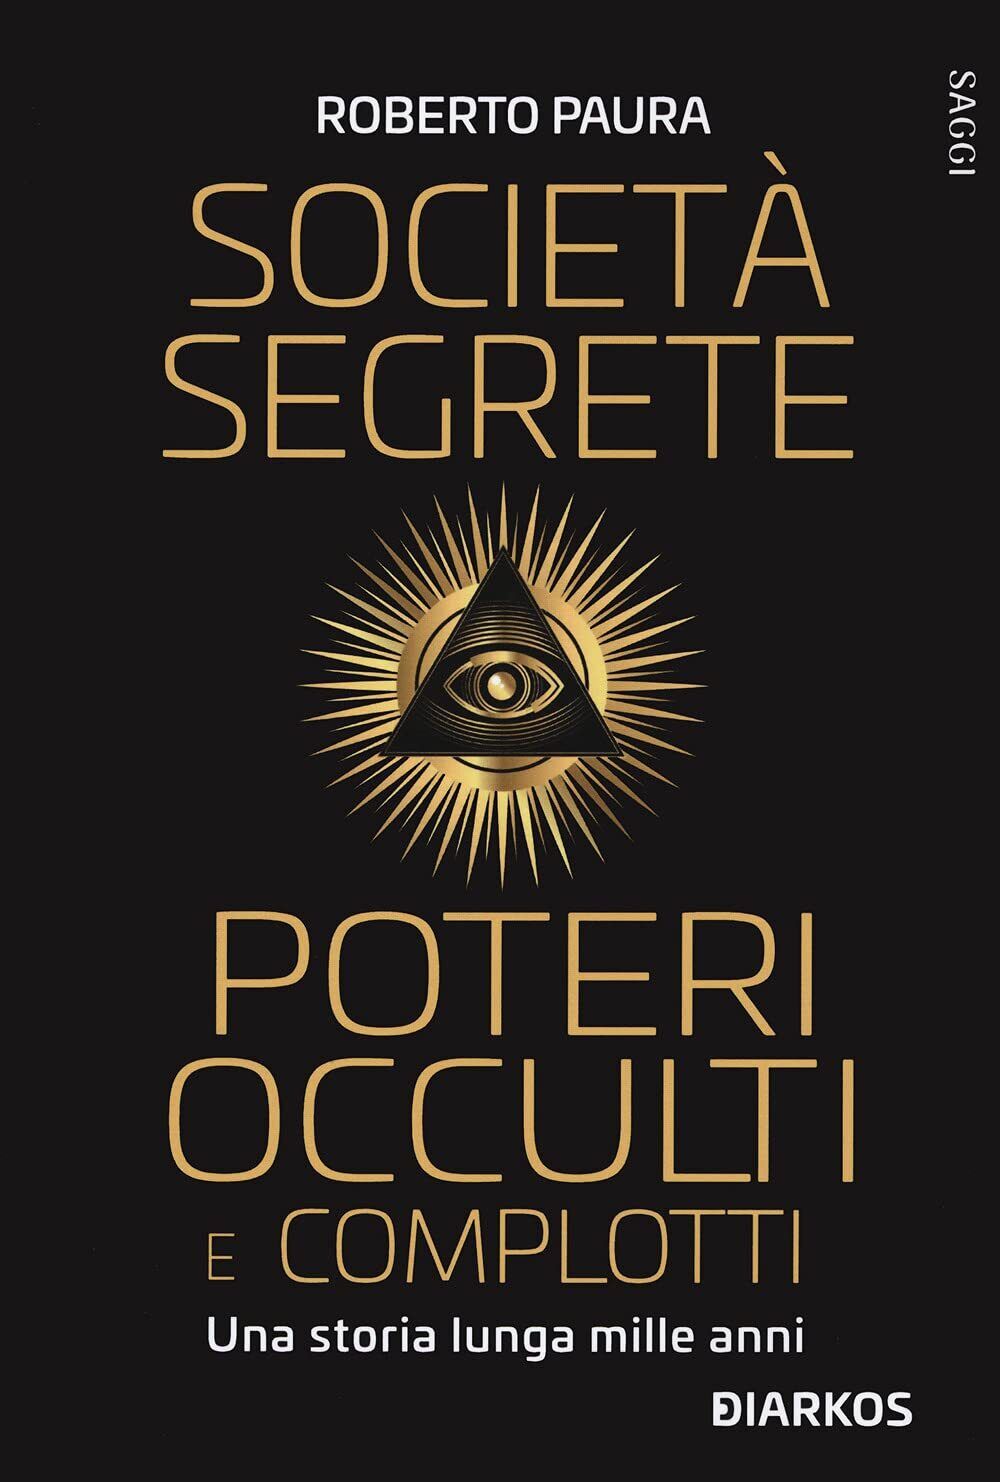 Societ? segrete, poteri occulti e complotti - Roberto Paura - DIARKOS, 2021 libro usato